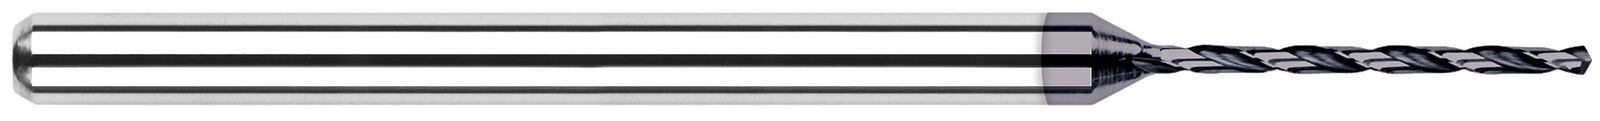 .1250" (1/8") Diameter Miniature Carbide Drill, .413" Flute Length